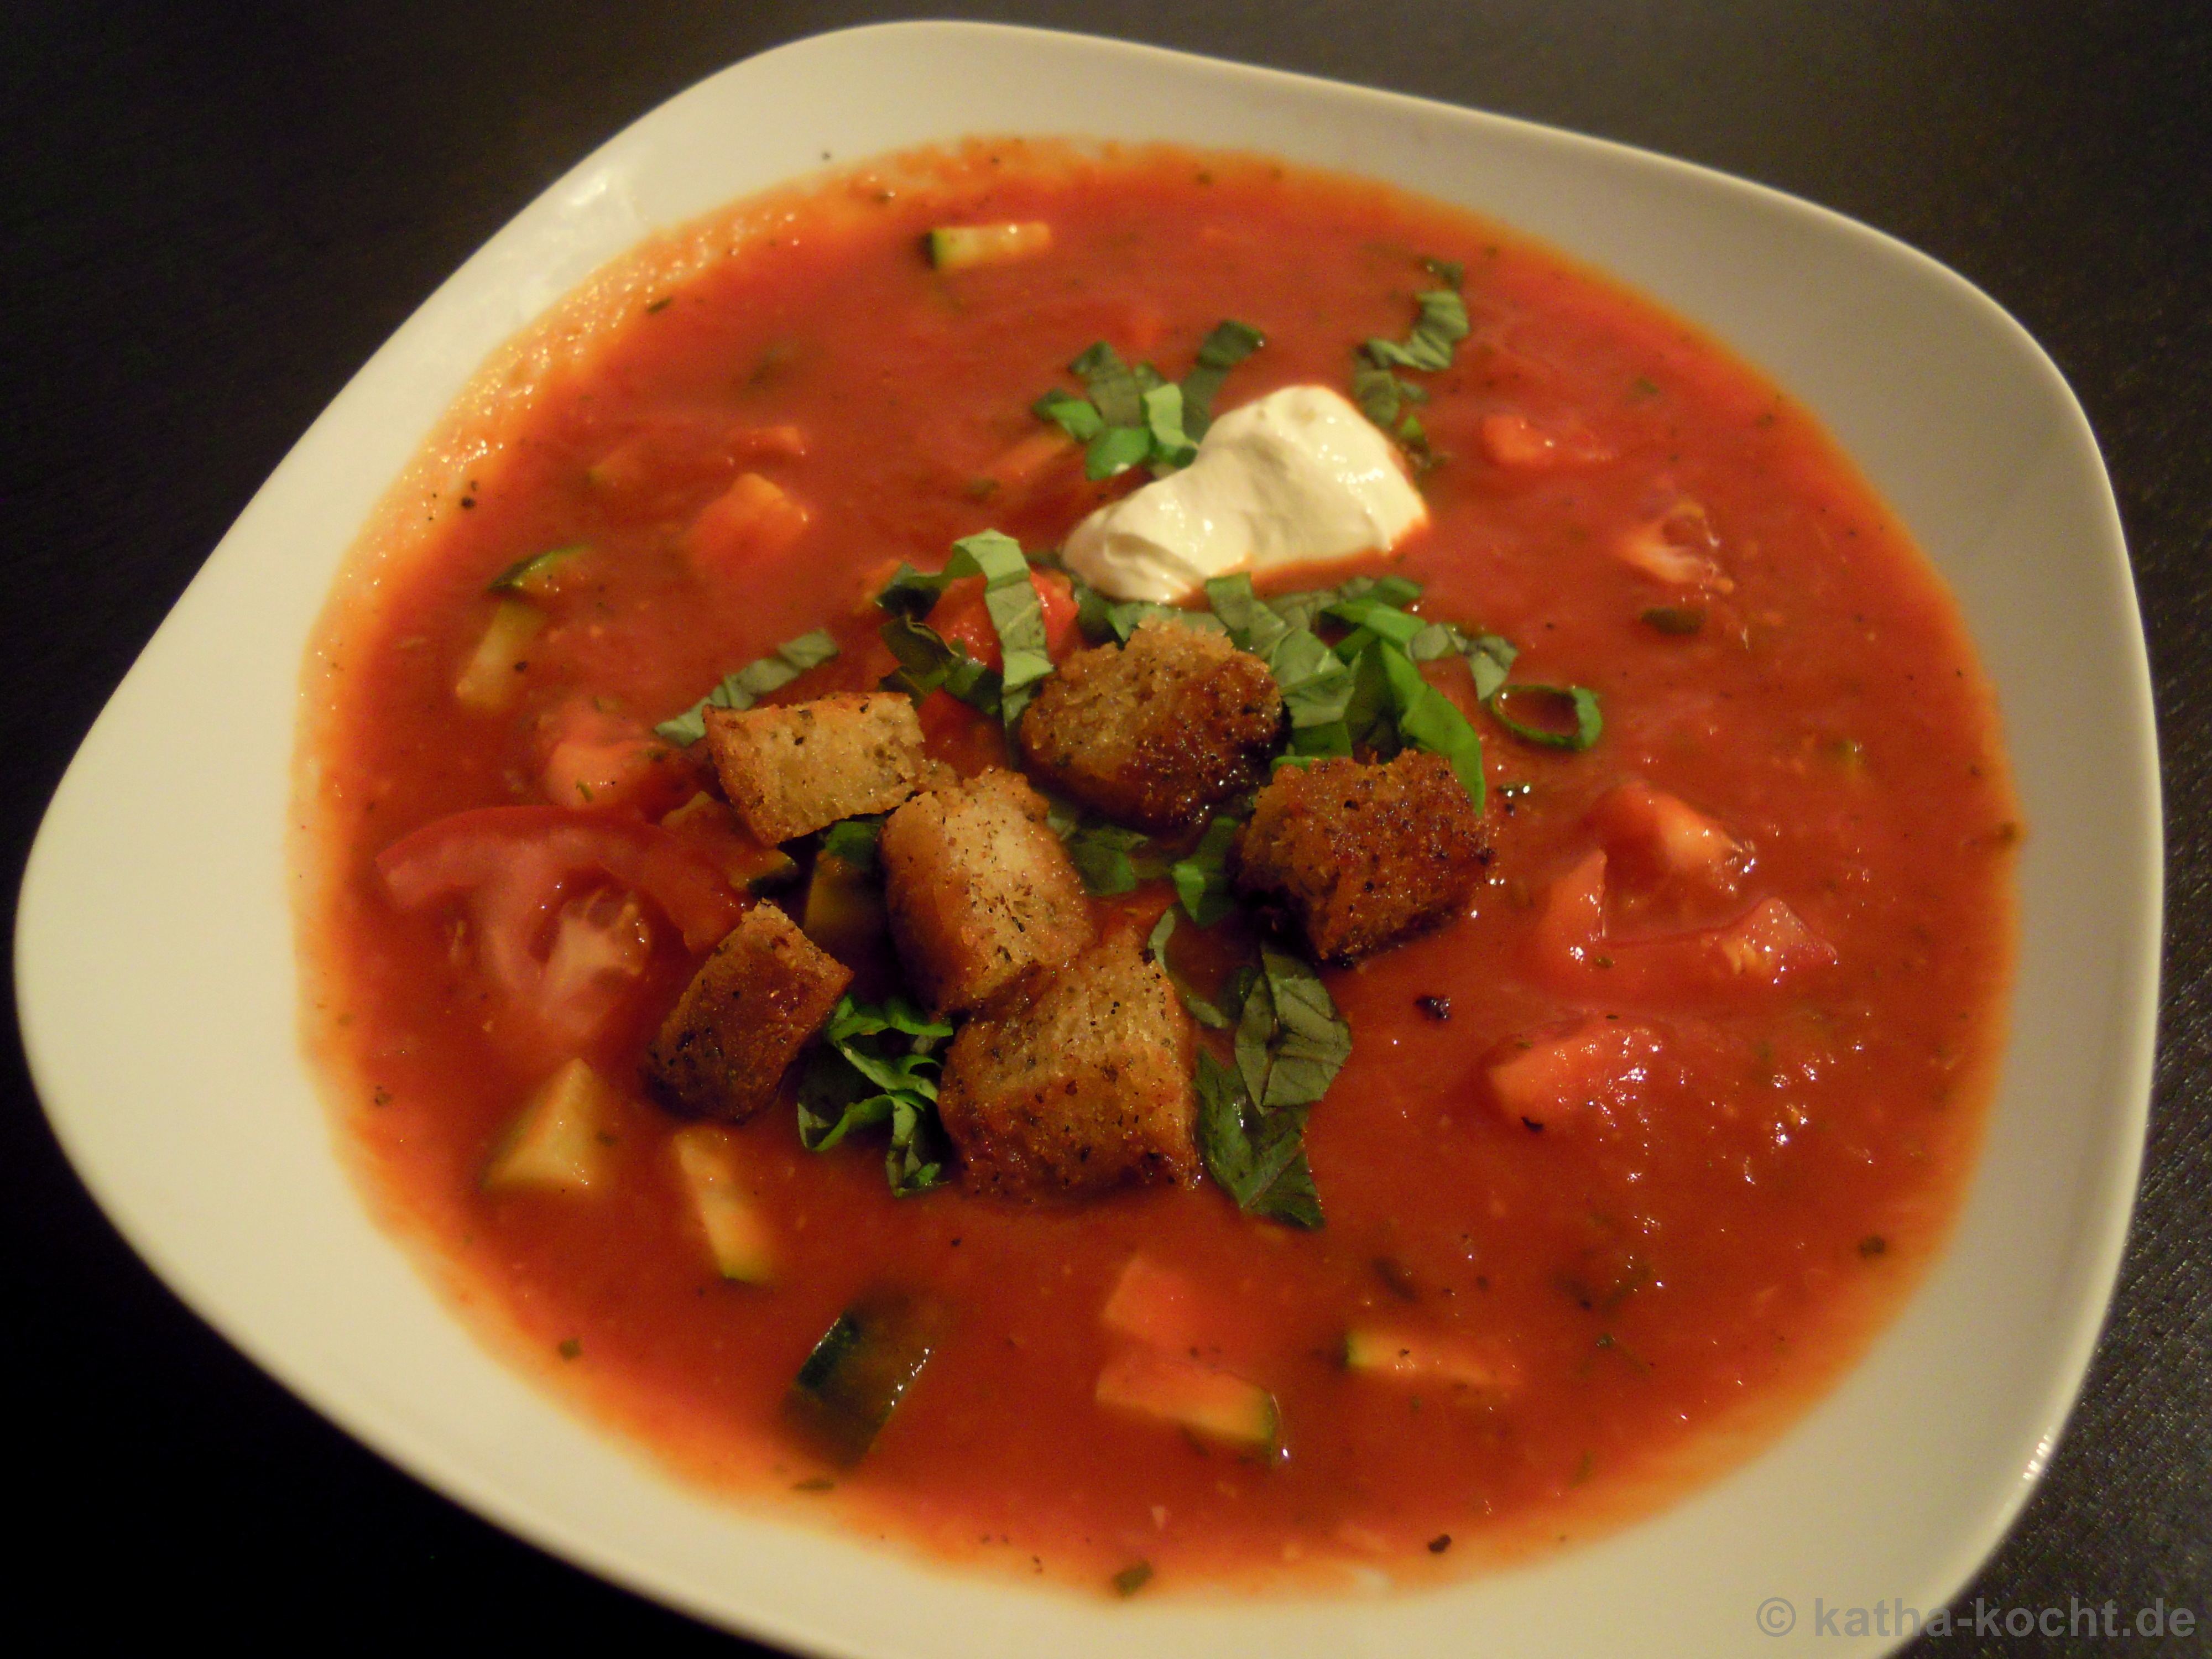 Tomaten-Zucchini Suppe mit Basilikum und Brotcroutons - Katha-kocht!